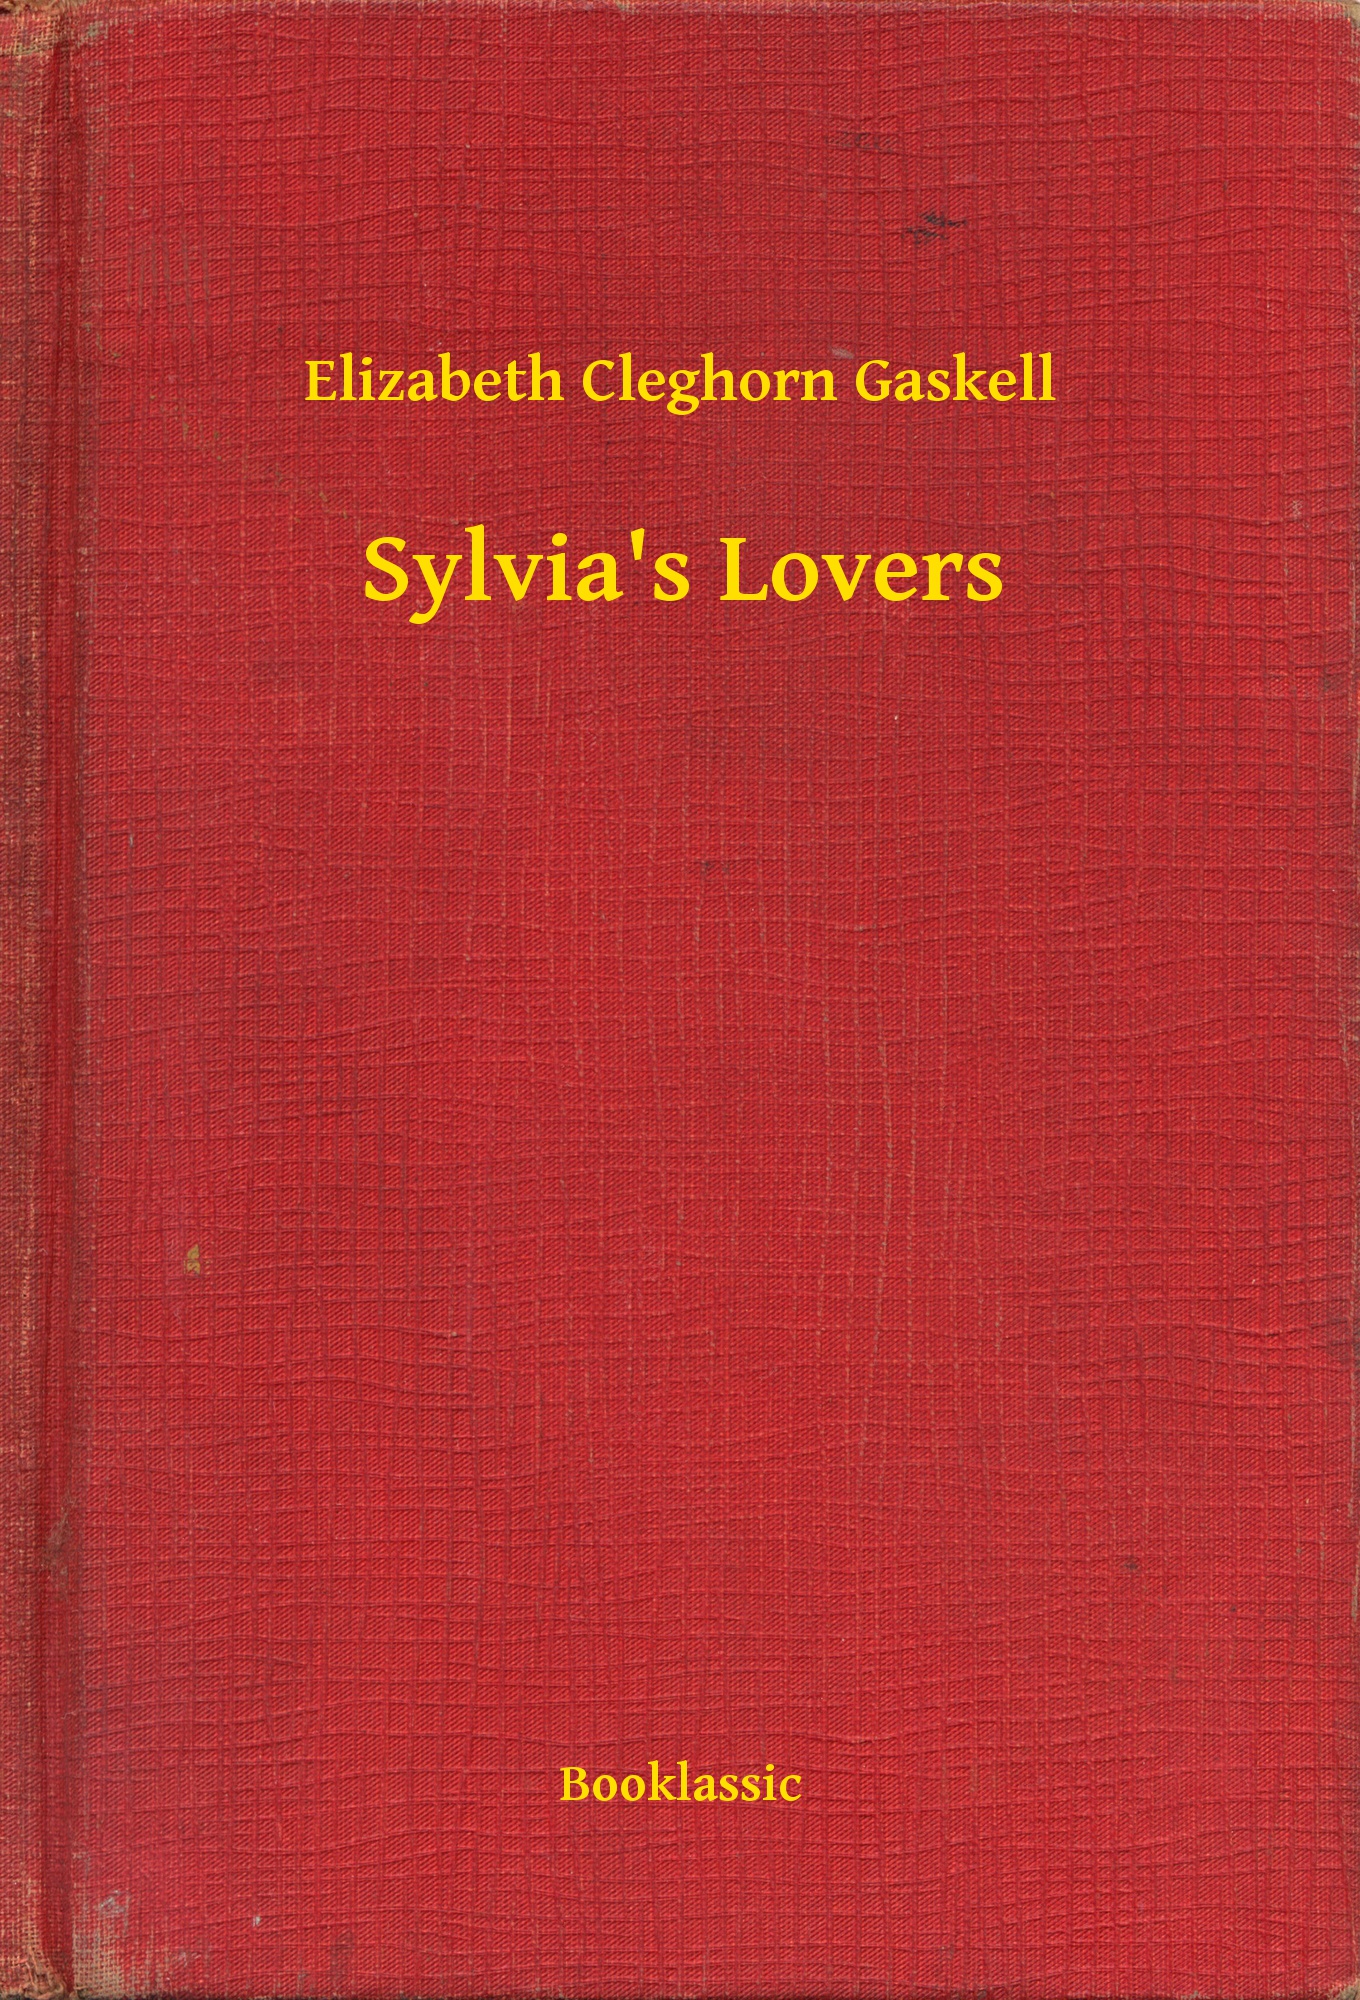 Sylvia"s Lovers